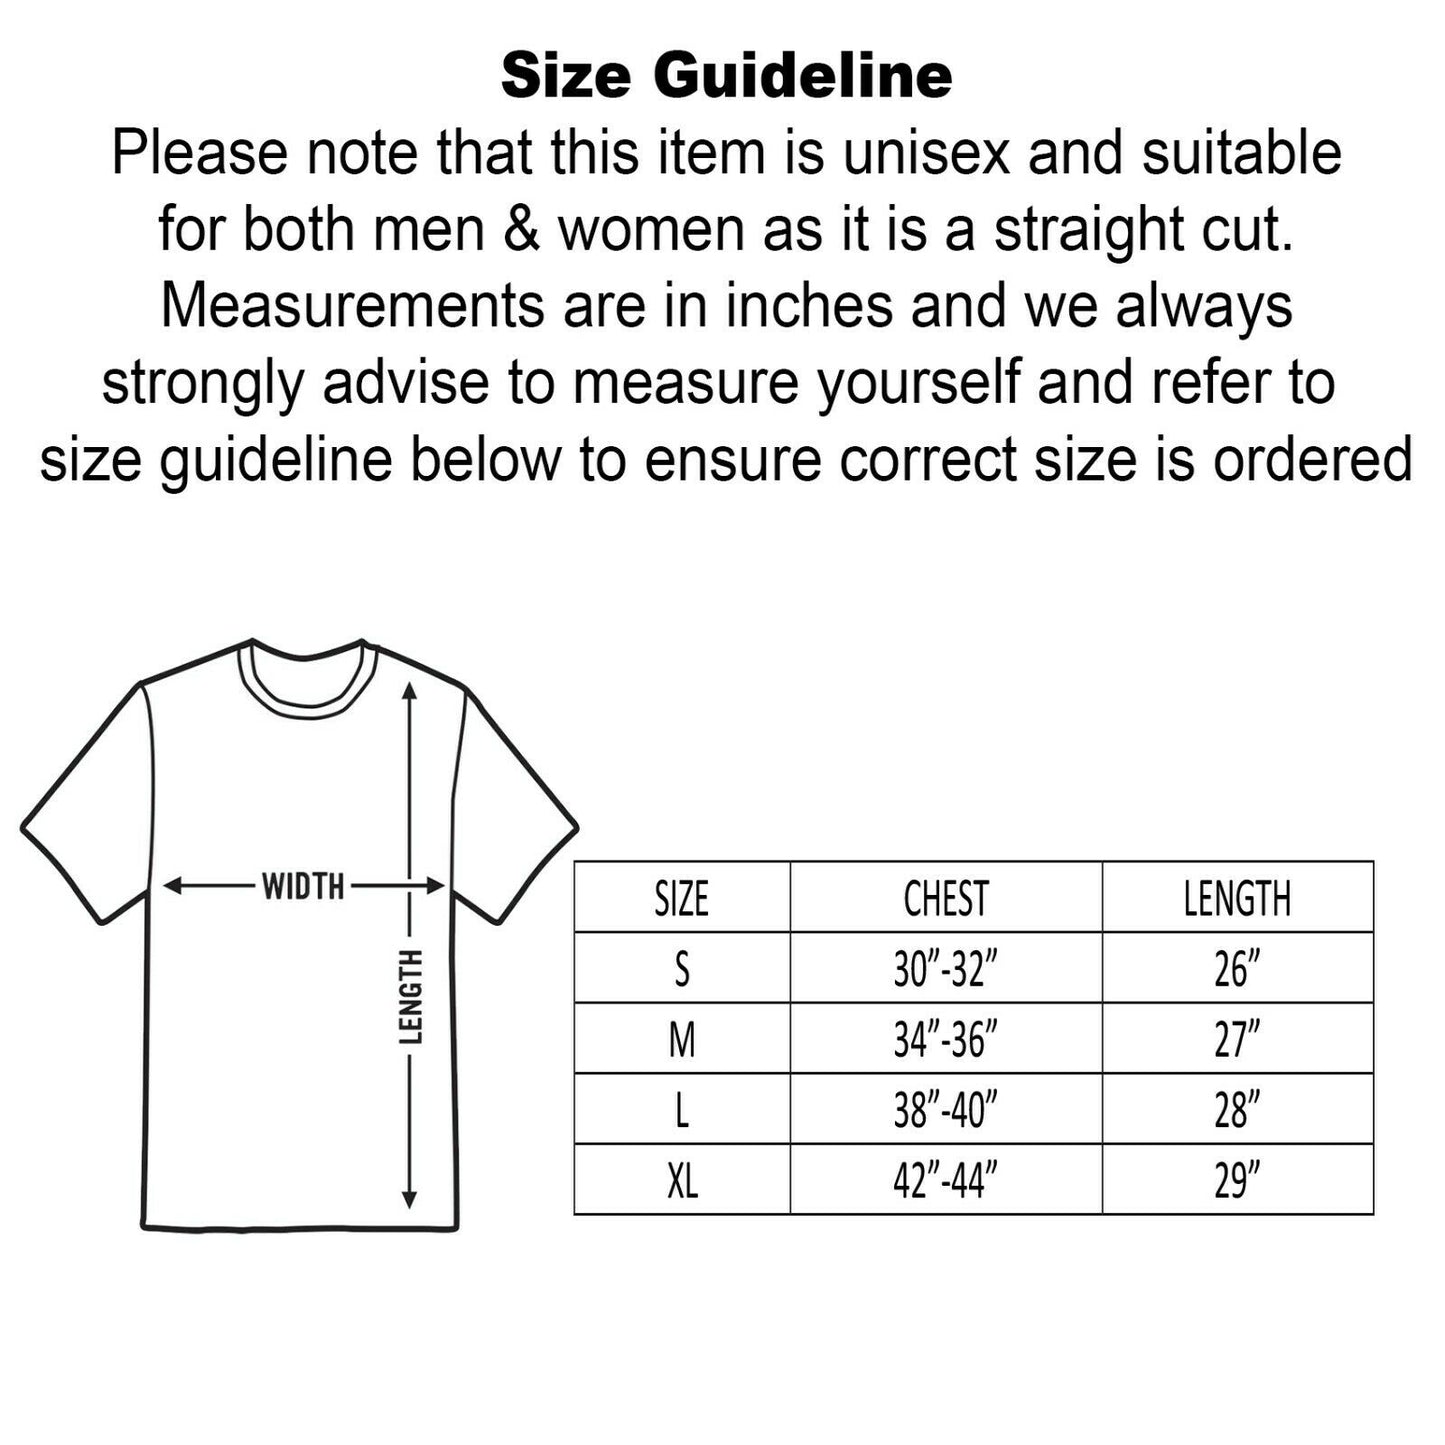 Unisex Strung Out Raglan 3/4 Sleeve Baseball T-Shirt